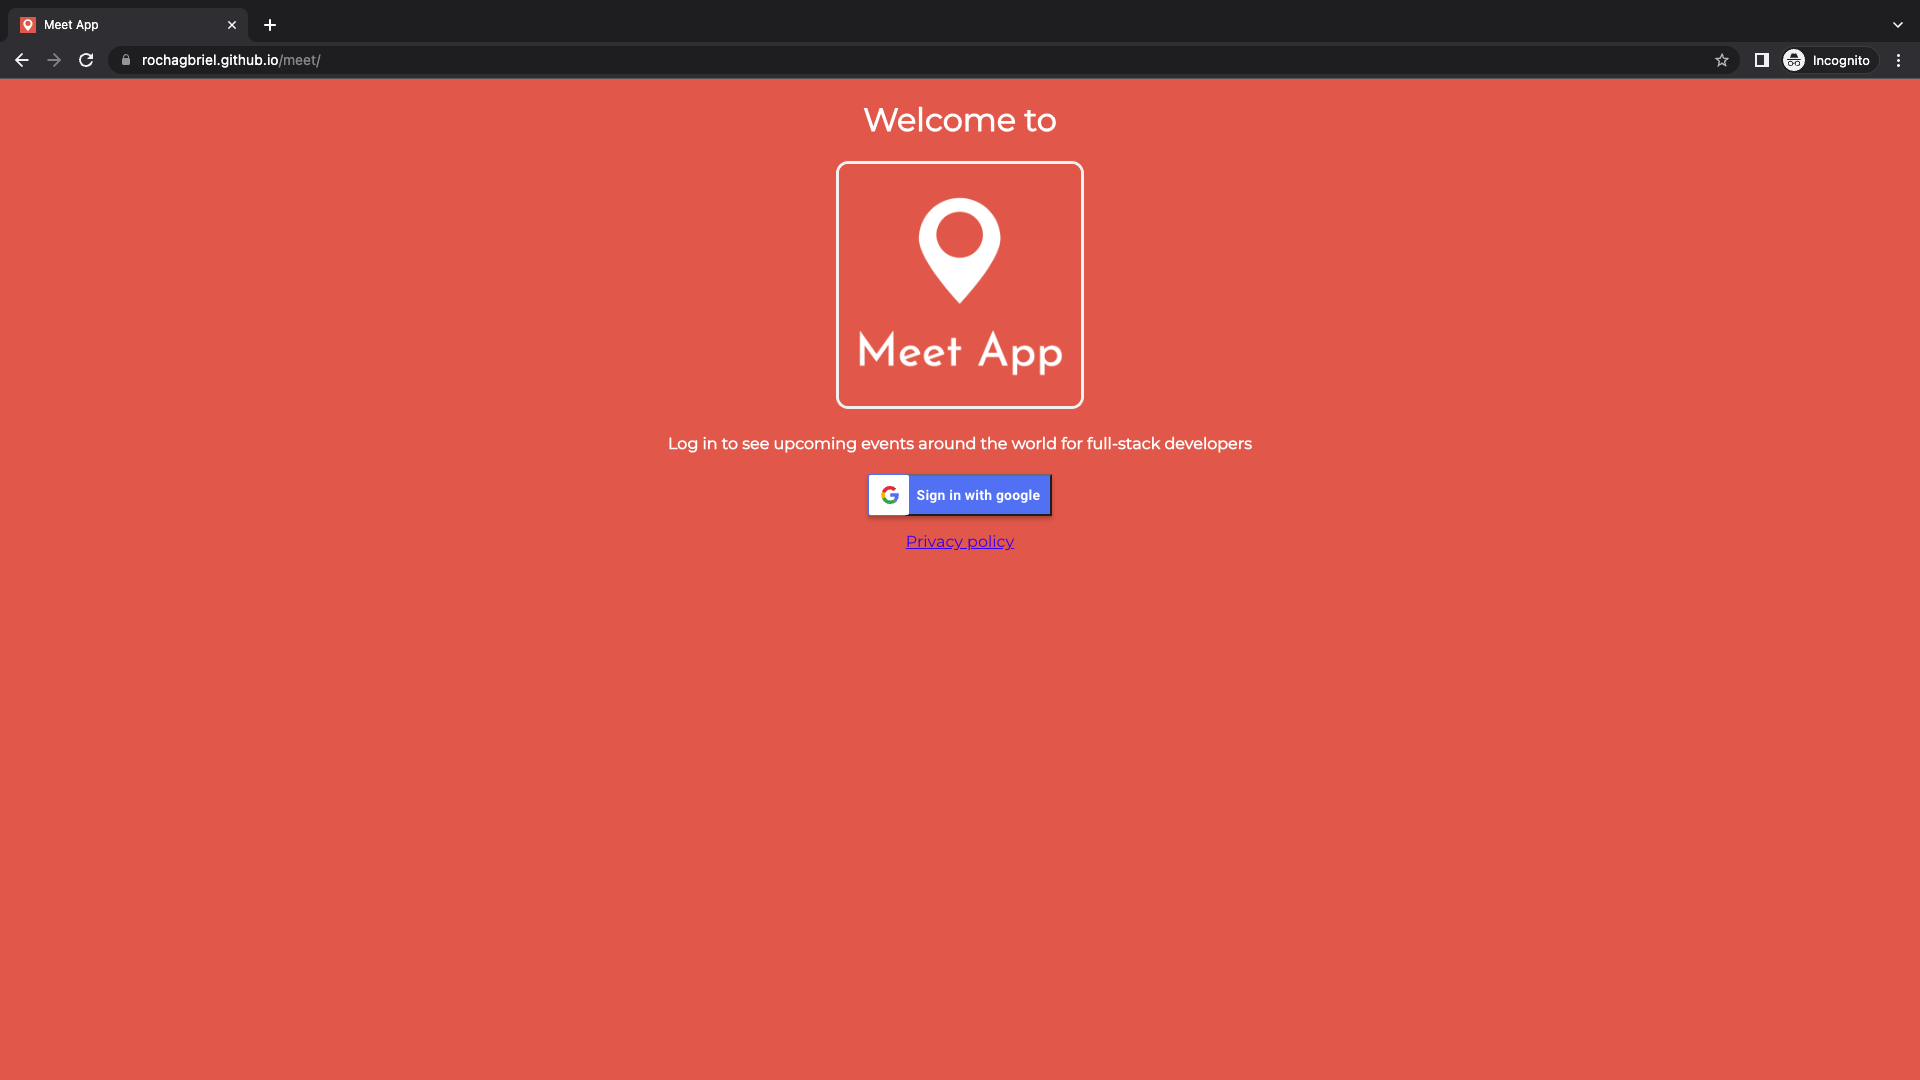 Meet App Home